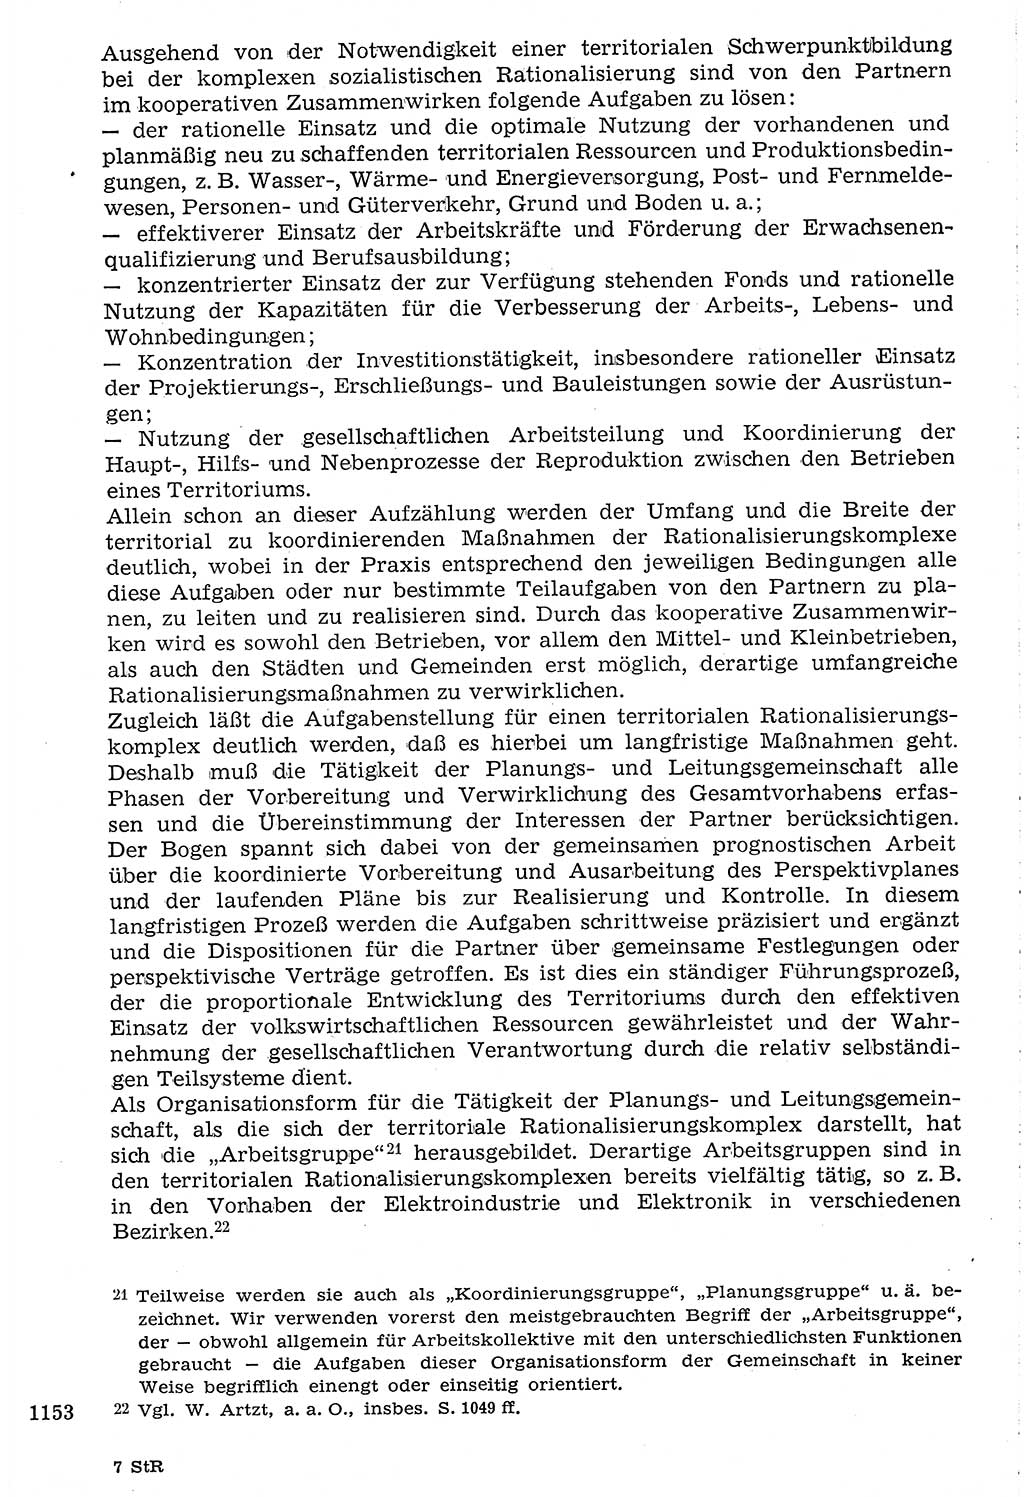 Staat und Recht (StuR), 17. Jahrgang [Deutsche Demokratische Republik (DDR)] 1968, Seite 1153 (StuR DDR 1968, S. 1153)